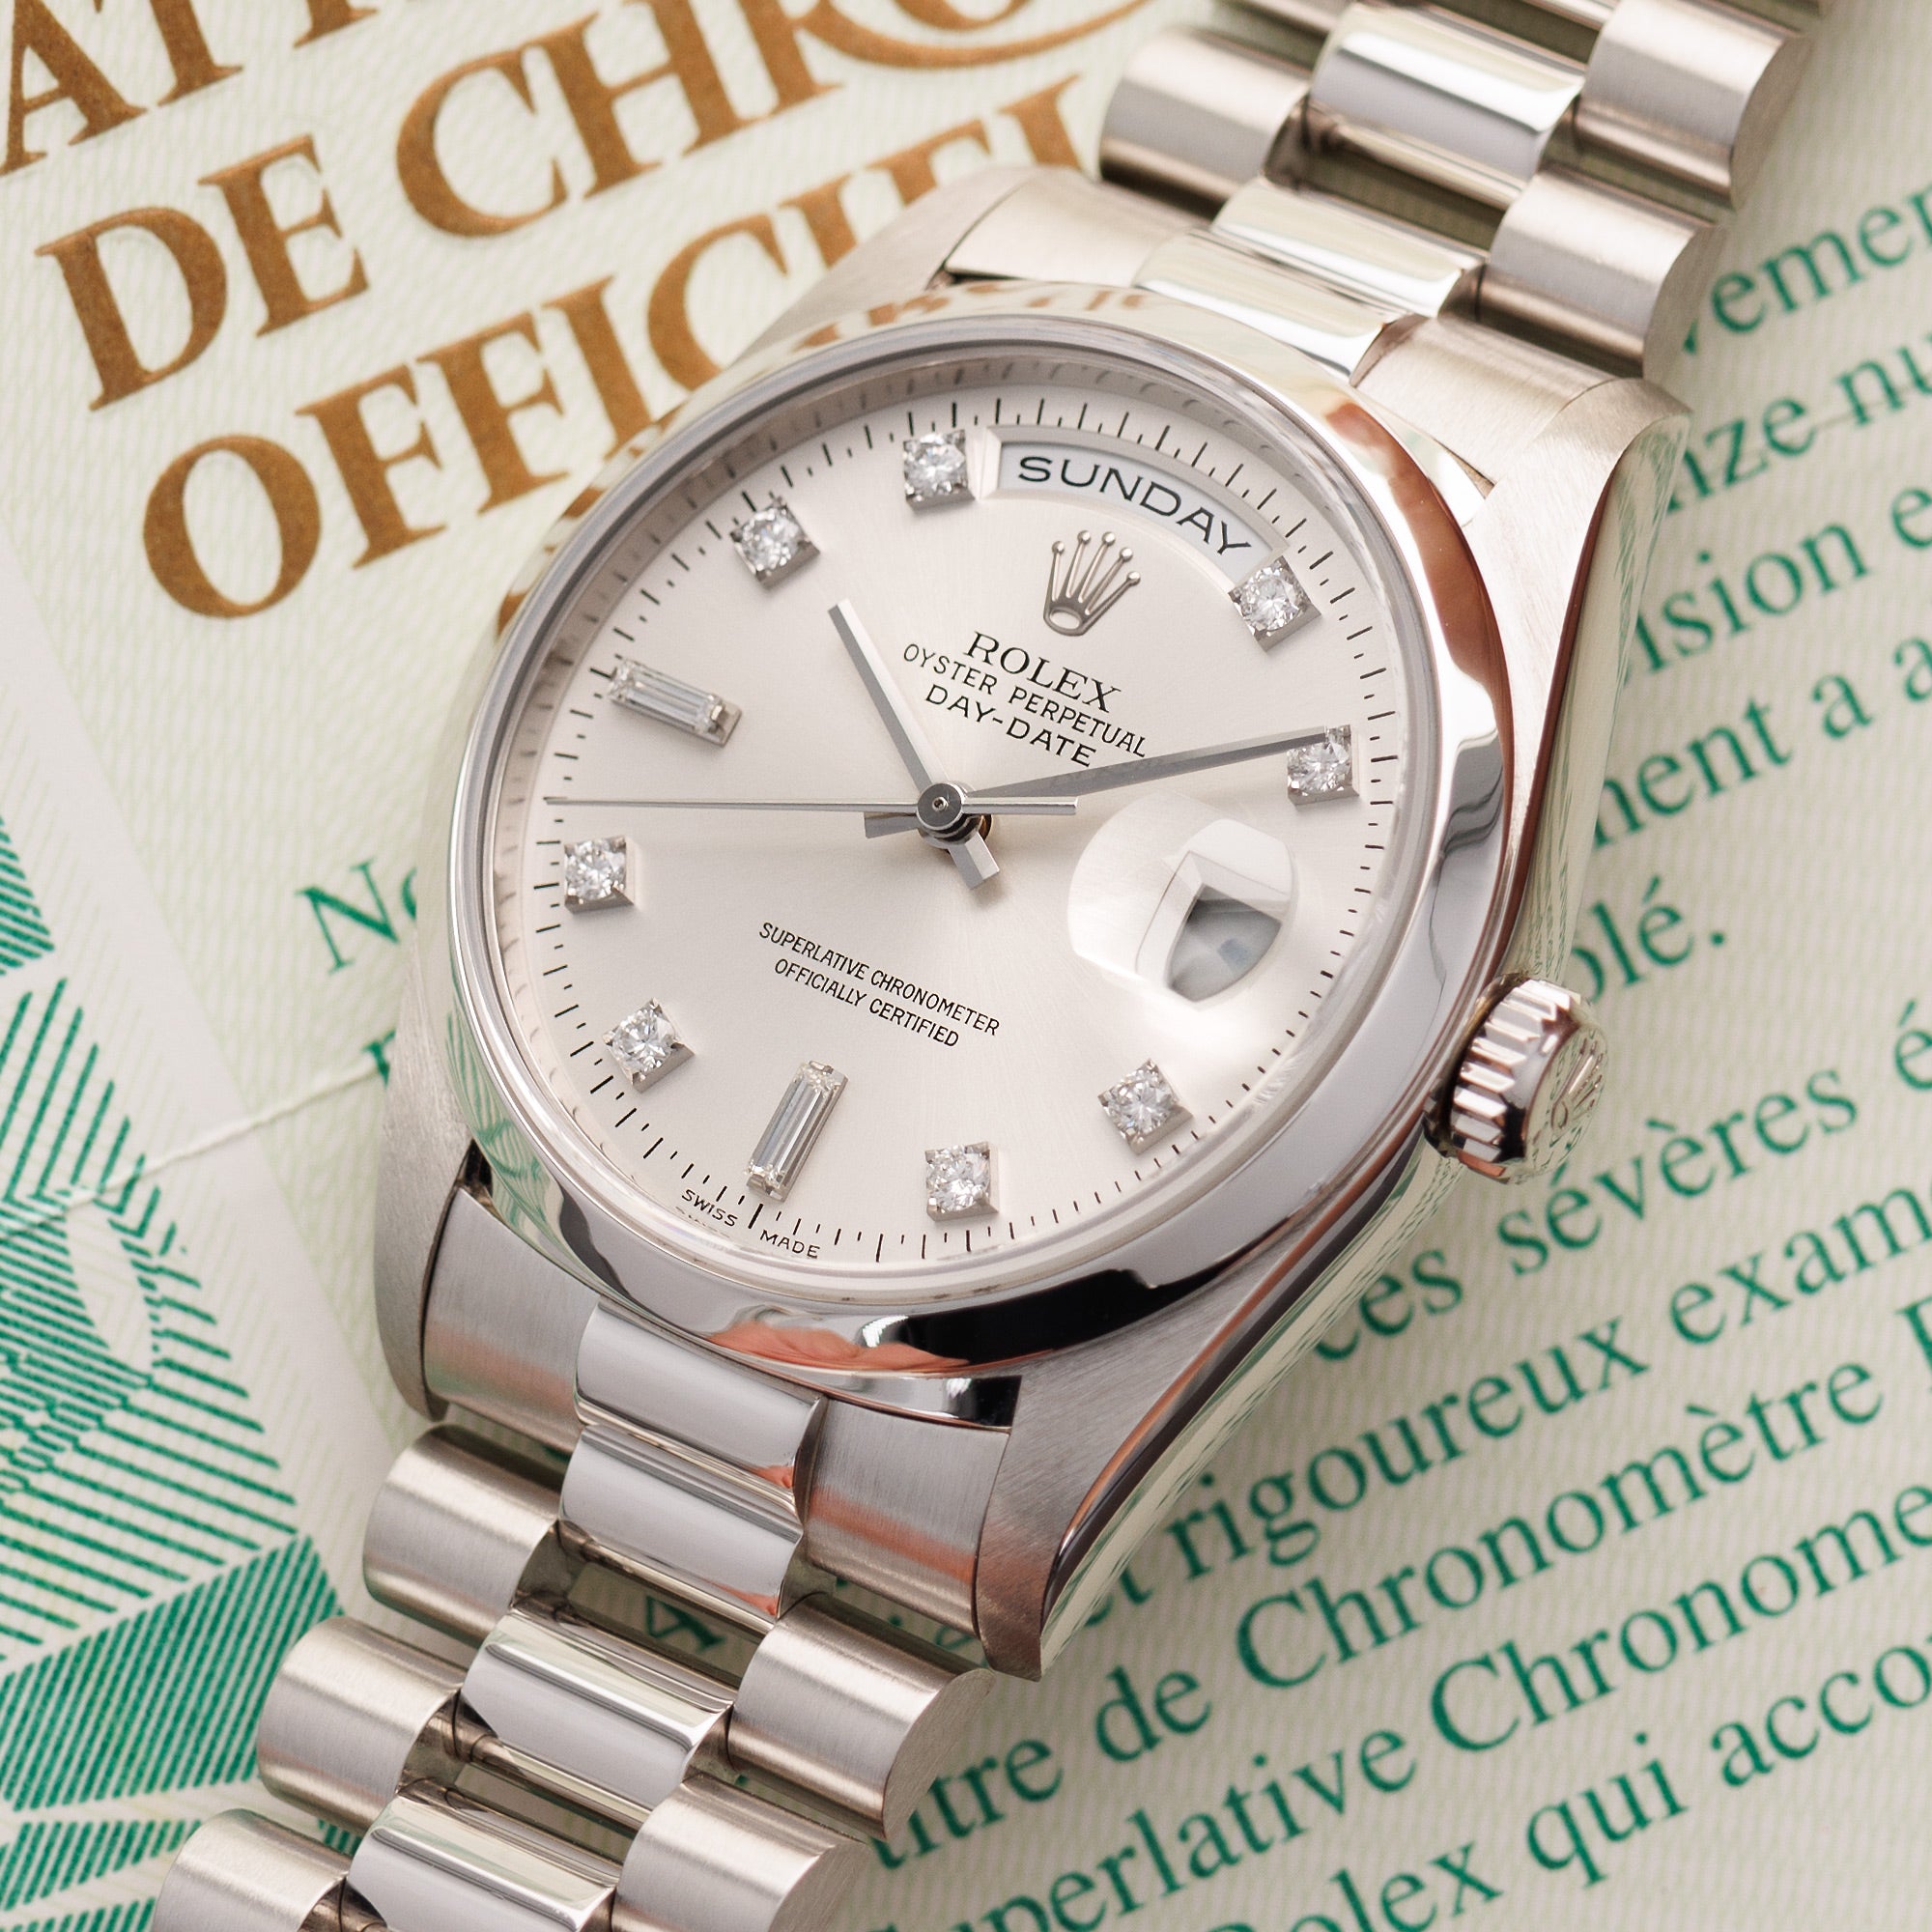 Rolex - Rolex Platinum Day Date Ref. 18206 - The Keystone Watches